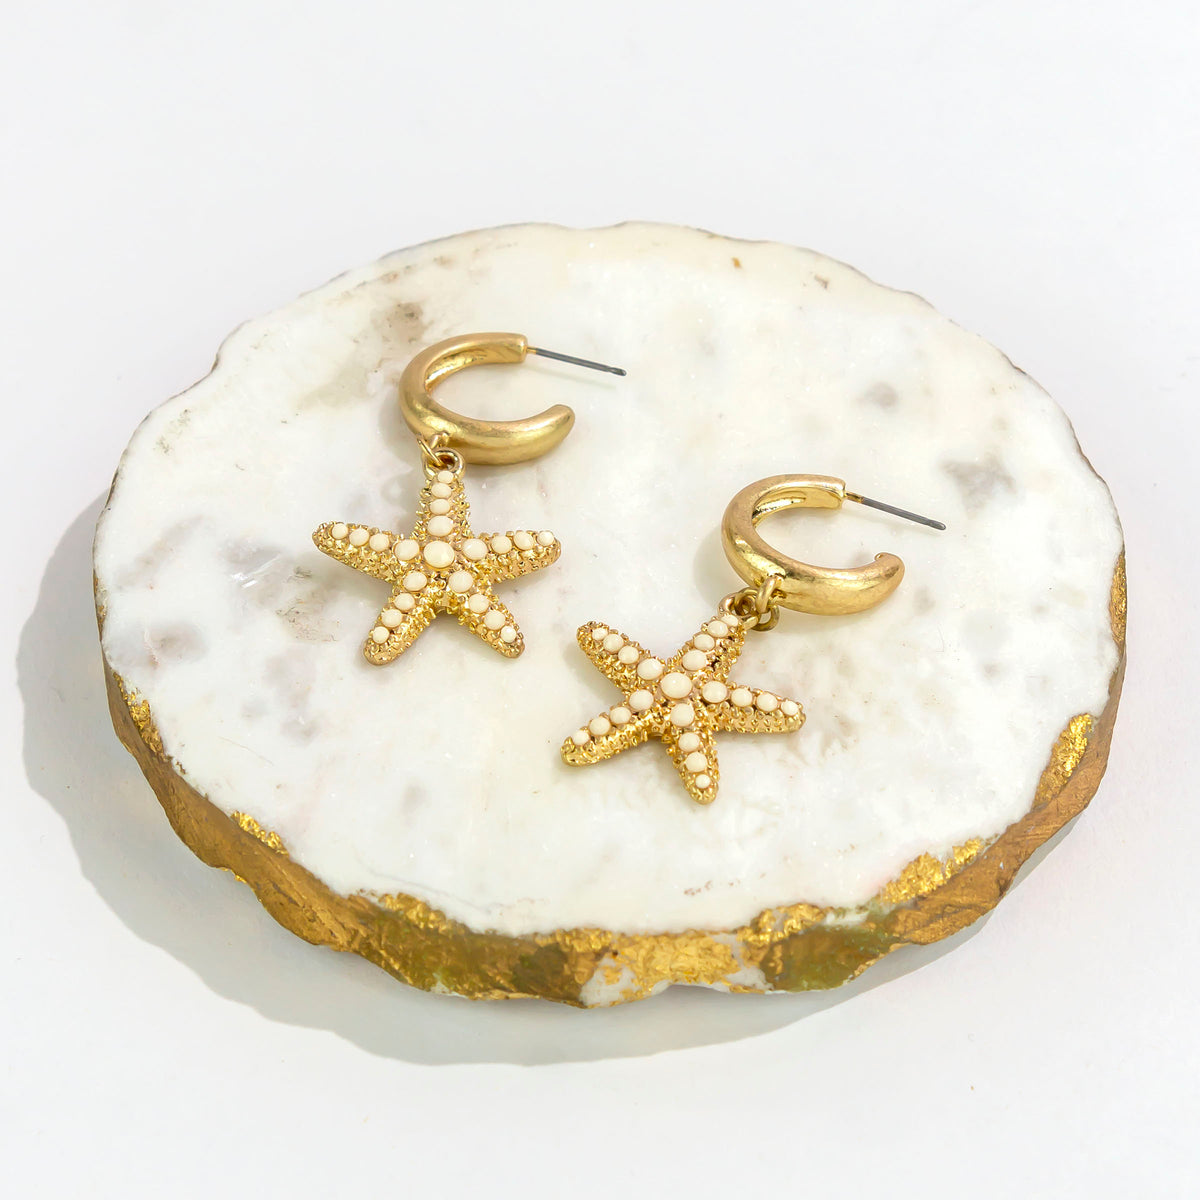 Dauplaise Jewelry - Star Fish Hoop Earrings